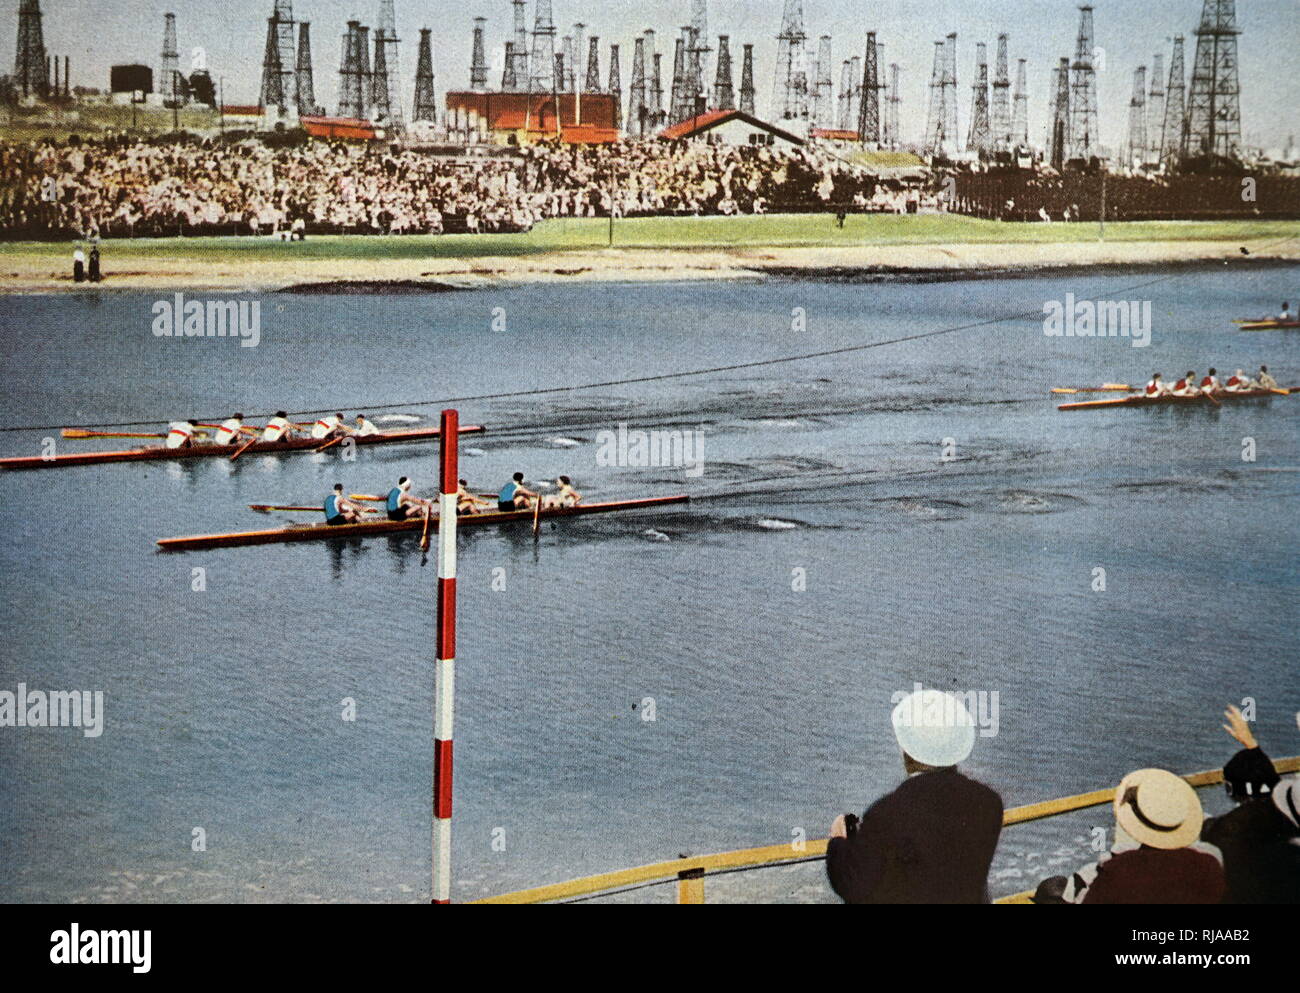 Foto der Coxed fours Rudern bei den Olympischen Spielen 1932. Das Foto zeigt Deutschland Gold über Italien, Silber nahm gewinnen. Stockfoto